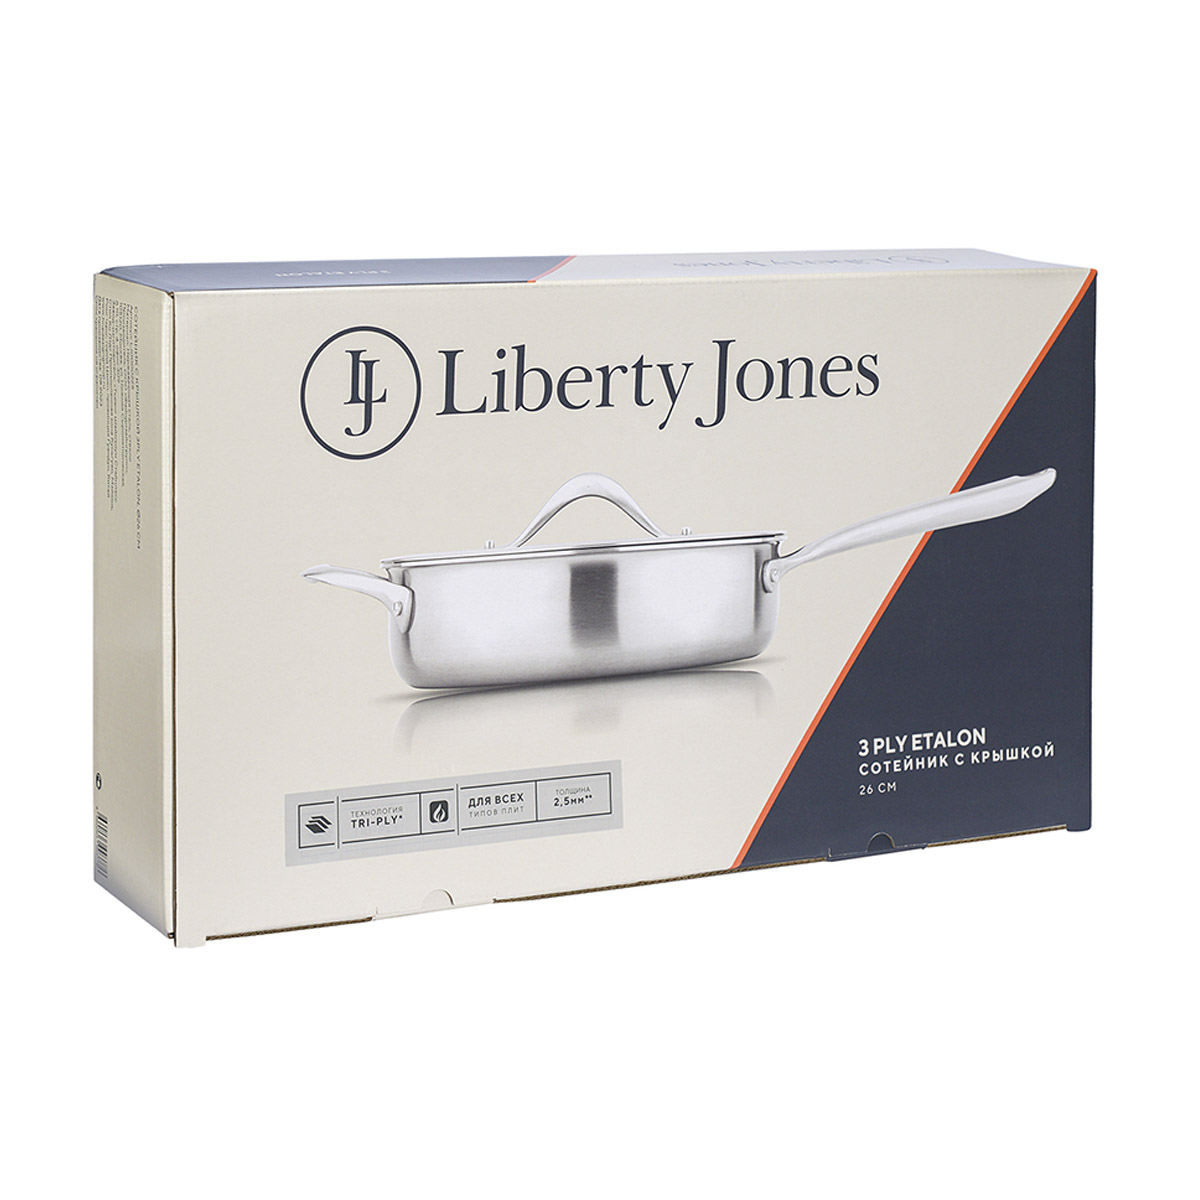 Сотейник с крышкой Liberty Jones 3Ply Etalon 26см Liberty Jones LJ0000225, цвет стальной - фото 11